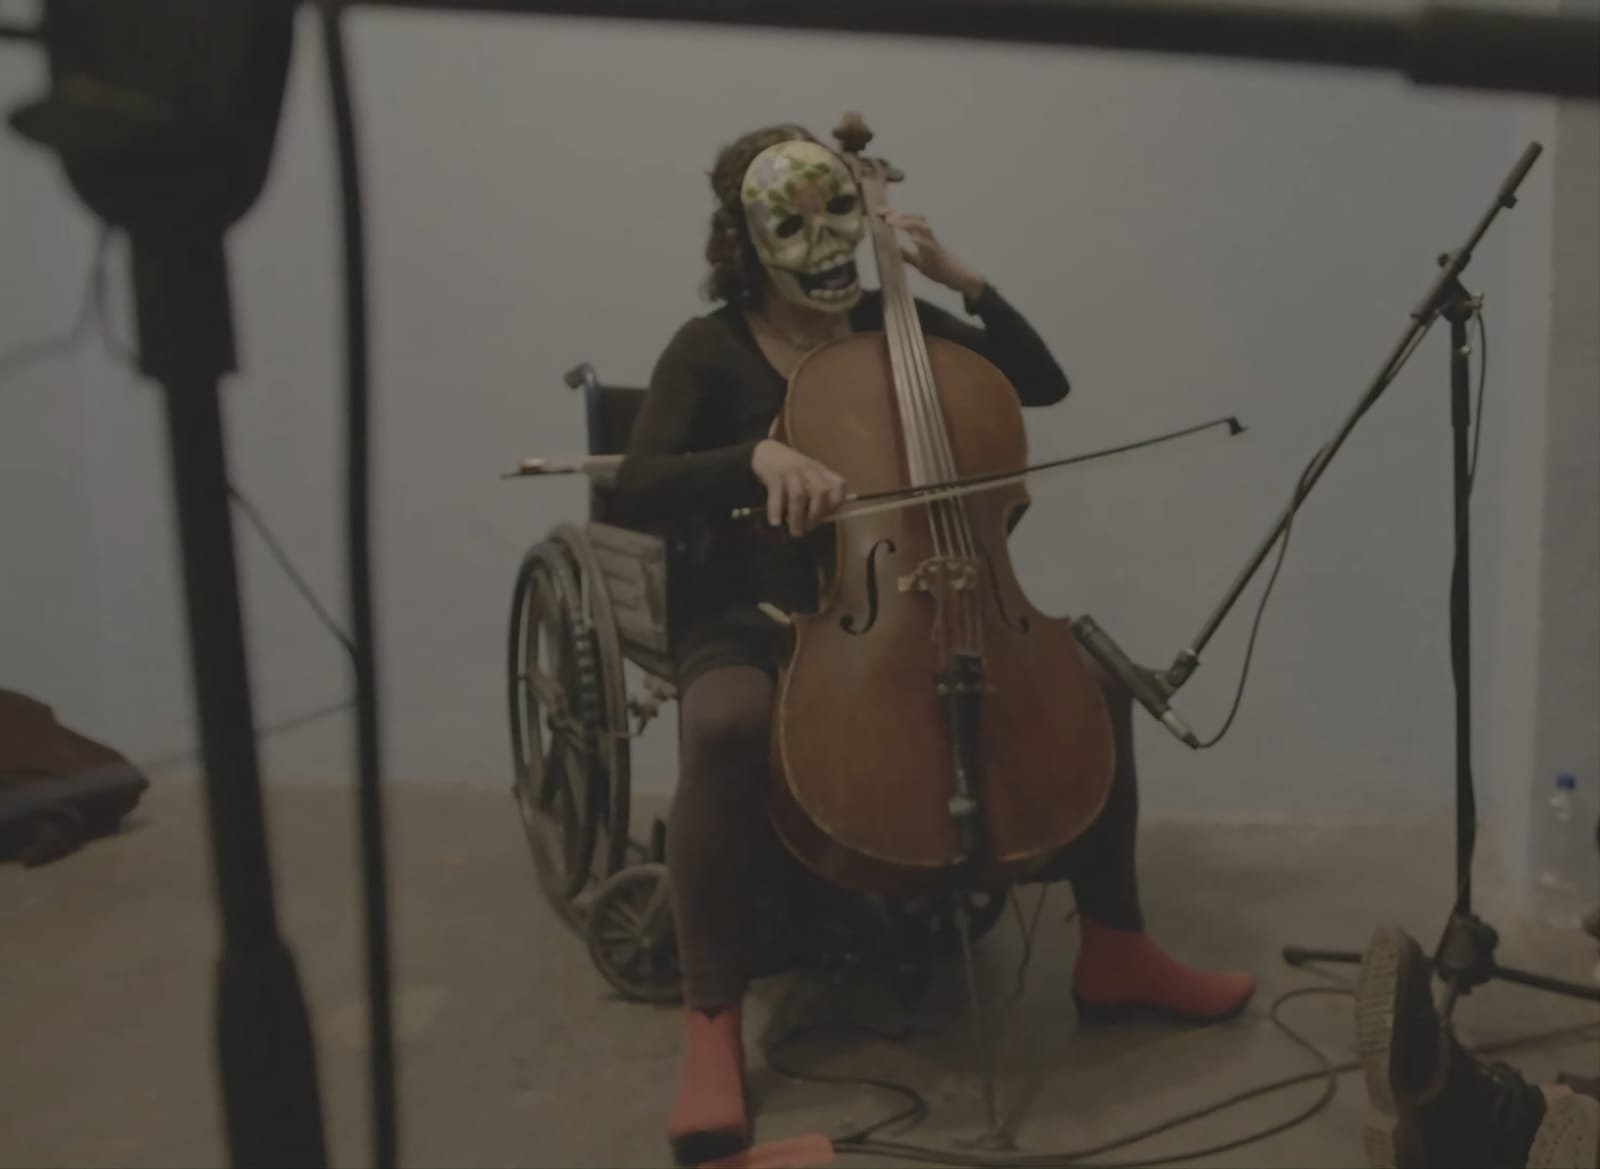 Fotografía de Maricarmen Graue, tocando el cello sobre una silla de ruedas y con una máscara de calavera